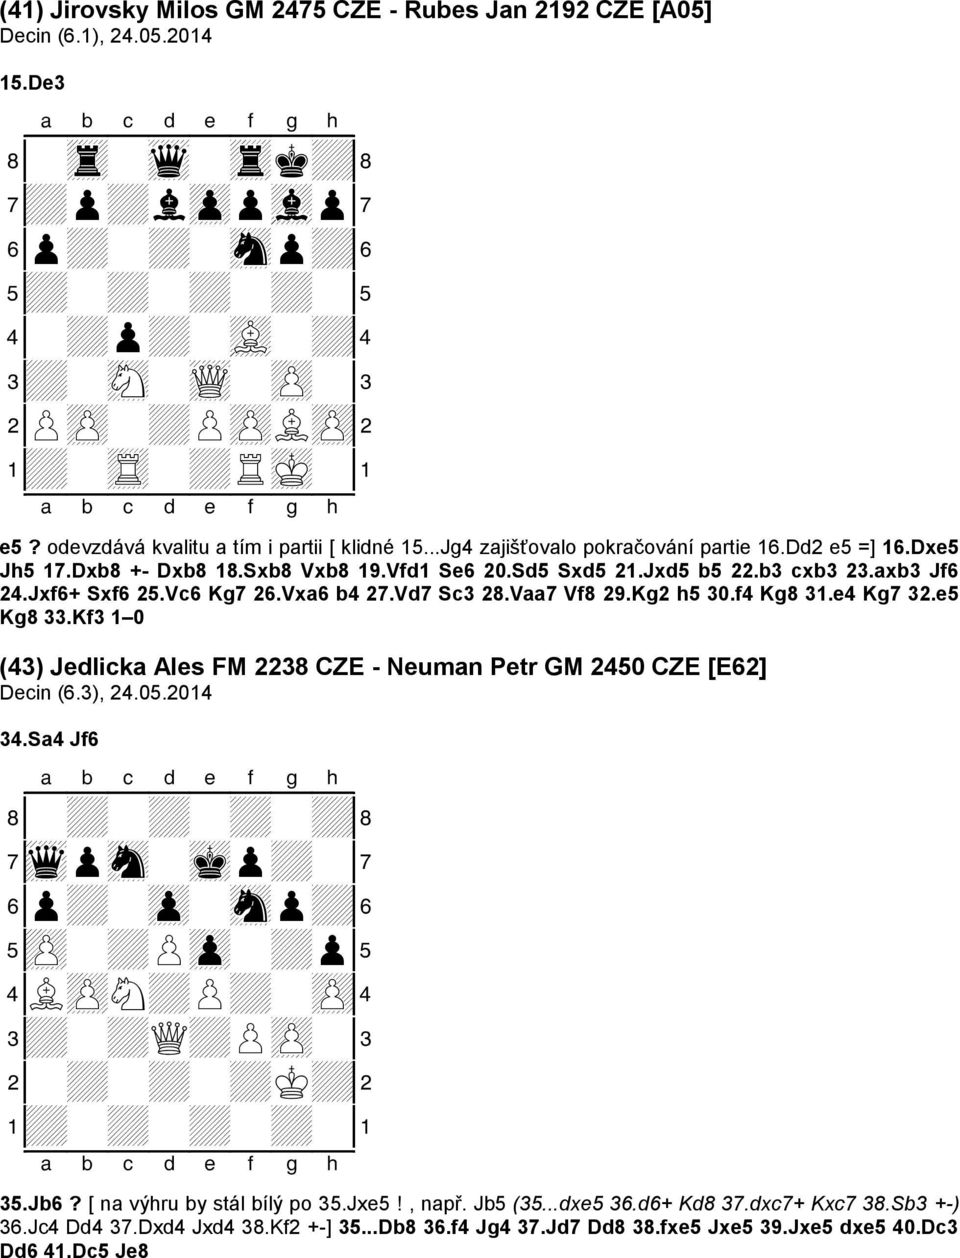 Jxf6+ Sxf6 25.Vc6 Kg7 26.Vxa6 b4 27.Vd7 Sc3 28.Vaa7 Vf8 29.Kg2 h5 30.f4 Kg8 31.e4 Kg7 32.e5 Kg8 33.Kf3 1 0 (43) Jedlicka Ales FM 2238 CZE - Neuman Petr GM 2450 CZE [E62] Decin (6.3), 24.05.2014 34.